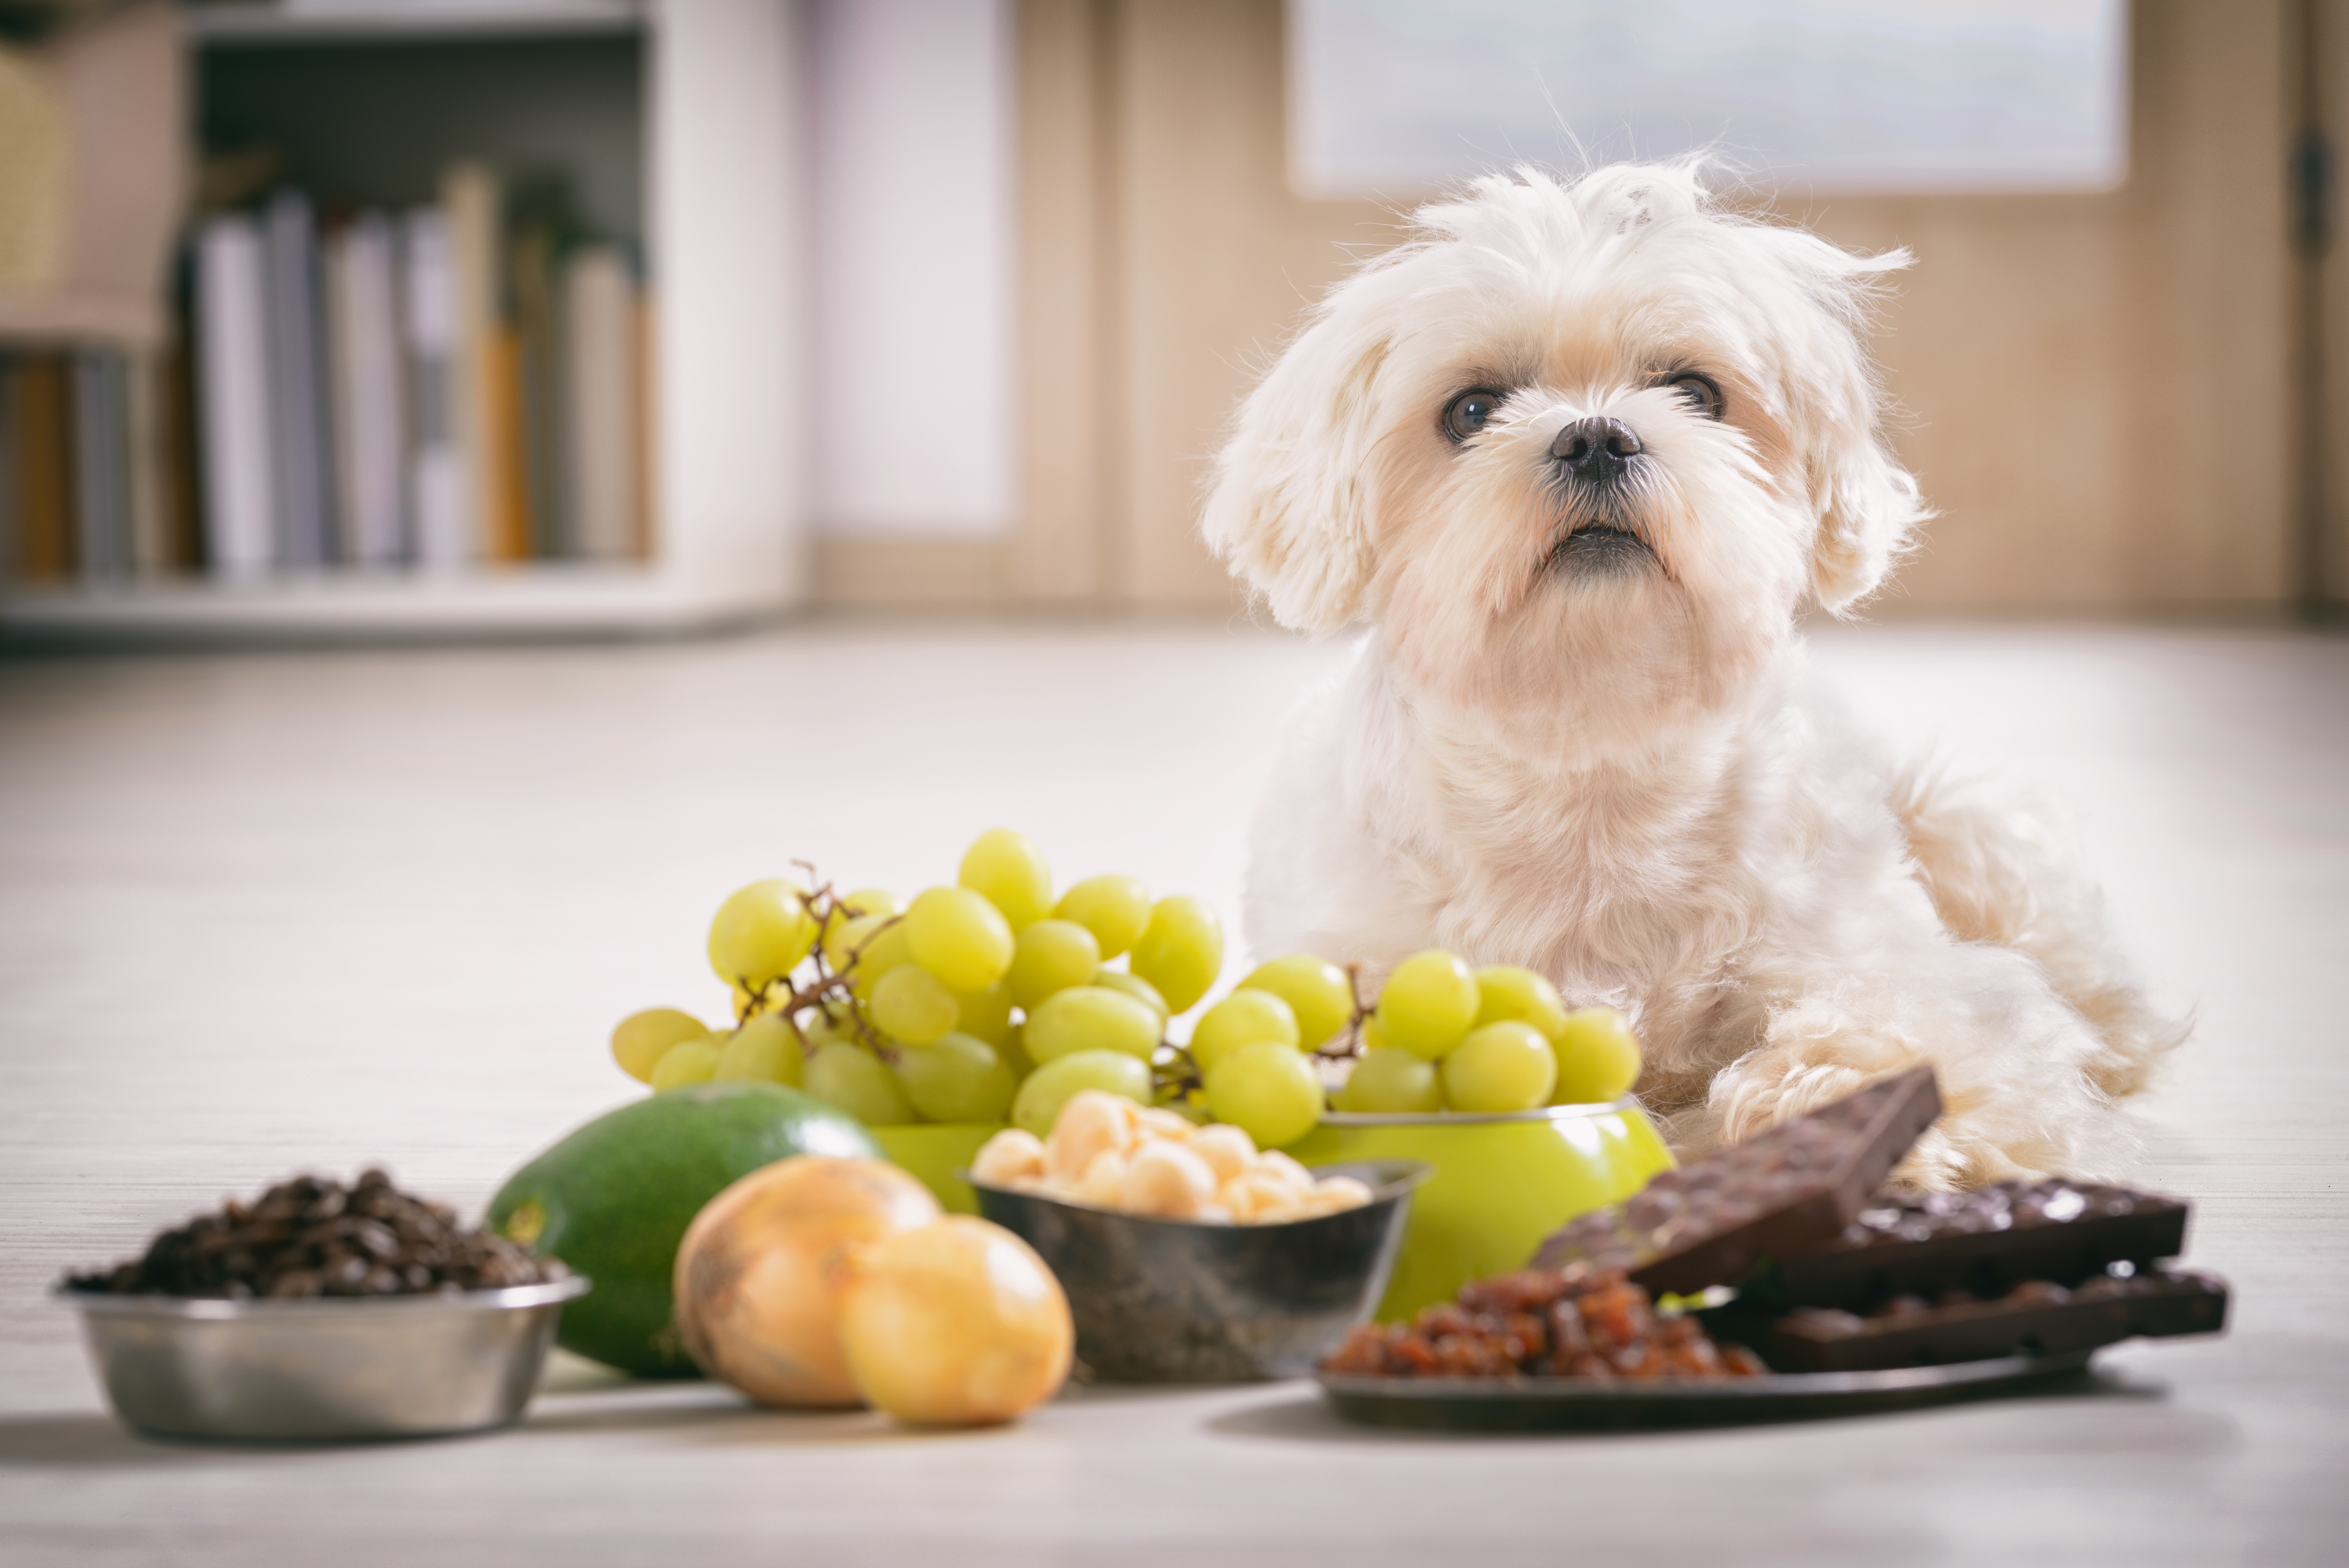 Uvas, nueces pasas y chocolate son alimentos que no debe darles a los perros porque pueden causarles la muerte. (Foto Prensa Libre: Shutterstock)